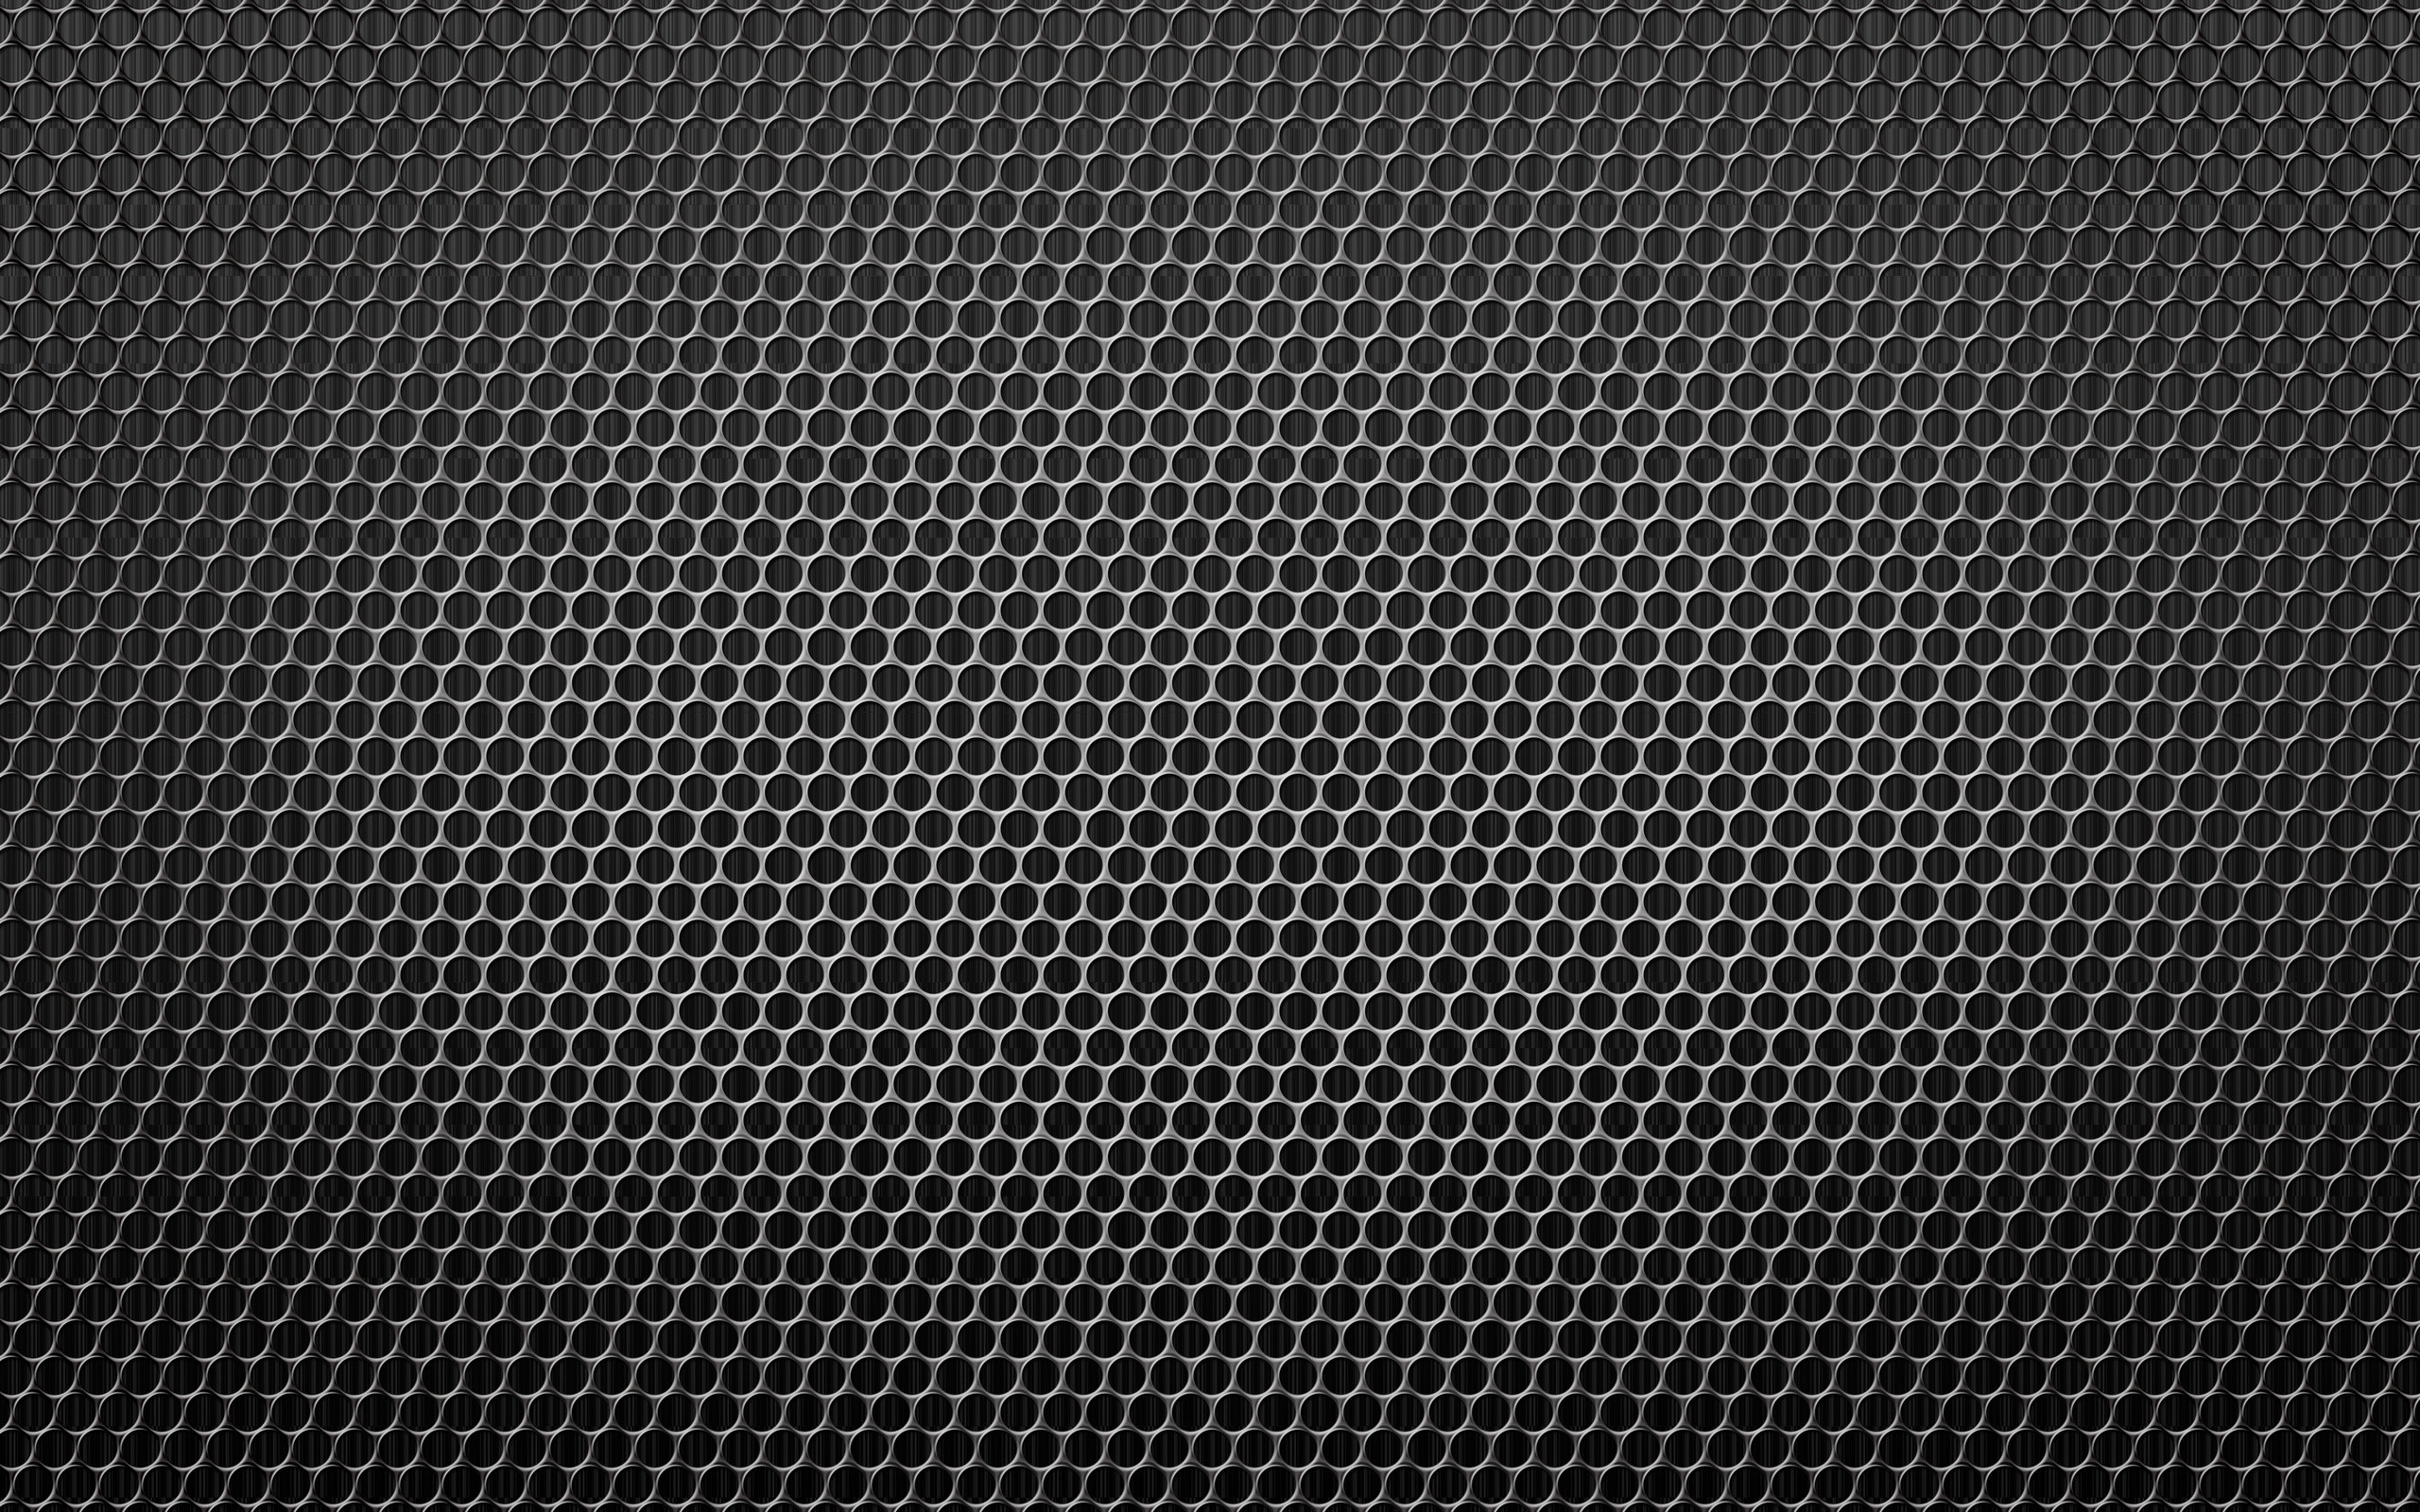 2560x1600 Metal HD Wallpaper | Hintergrund |  | ID:401026 - Wallpaper Abyss